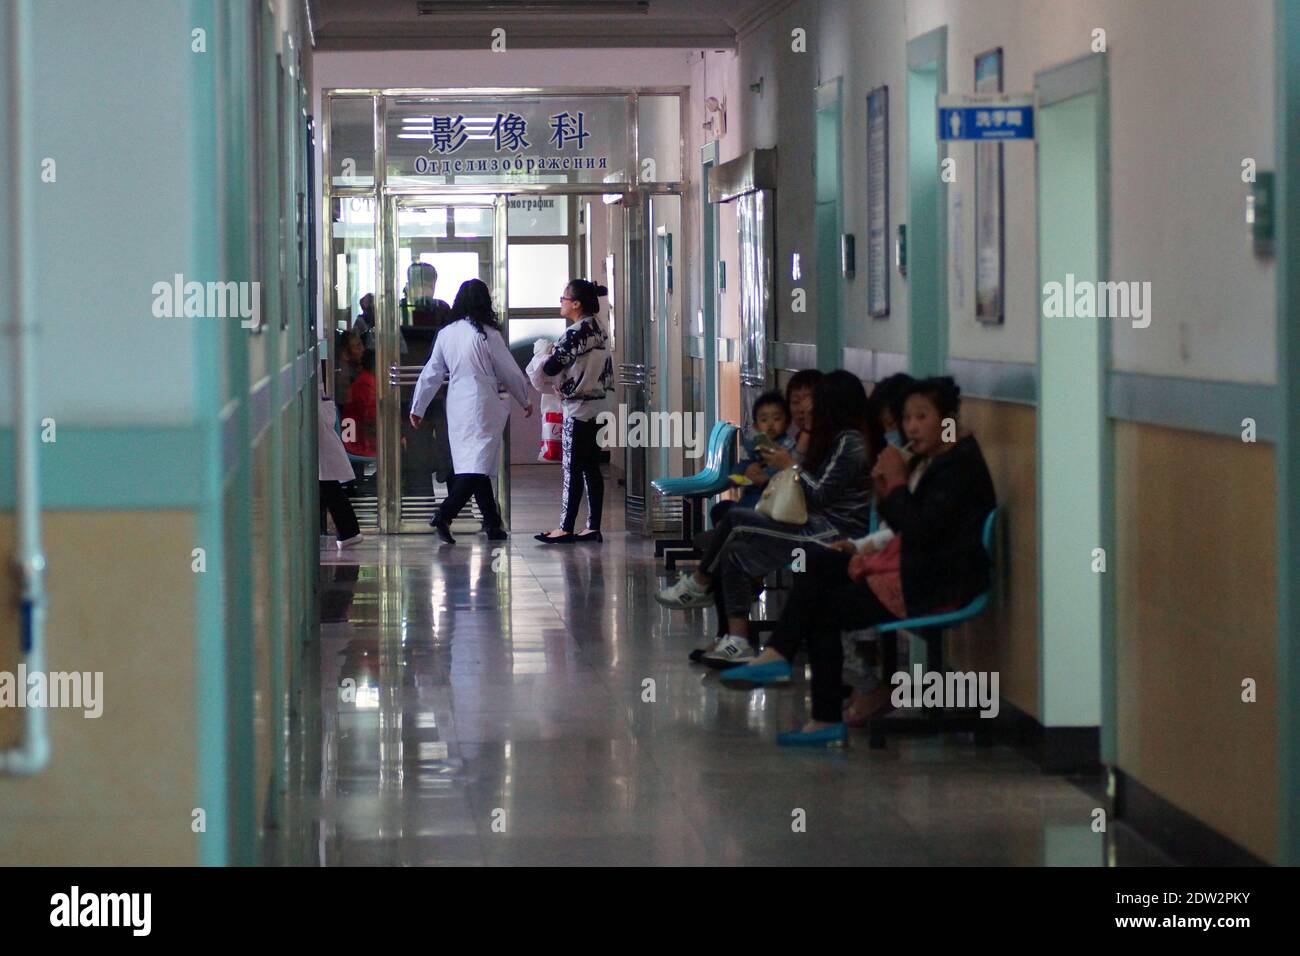 In den Fluren eines chinesischen Krankenhauses. Die Patienten warten auf einen Termin. Tanggangzi Krankenhaus. Anshan, Provinz Liaoning, China, Asien. Stockfoto